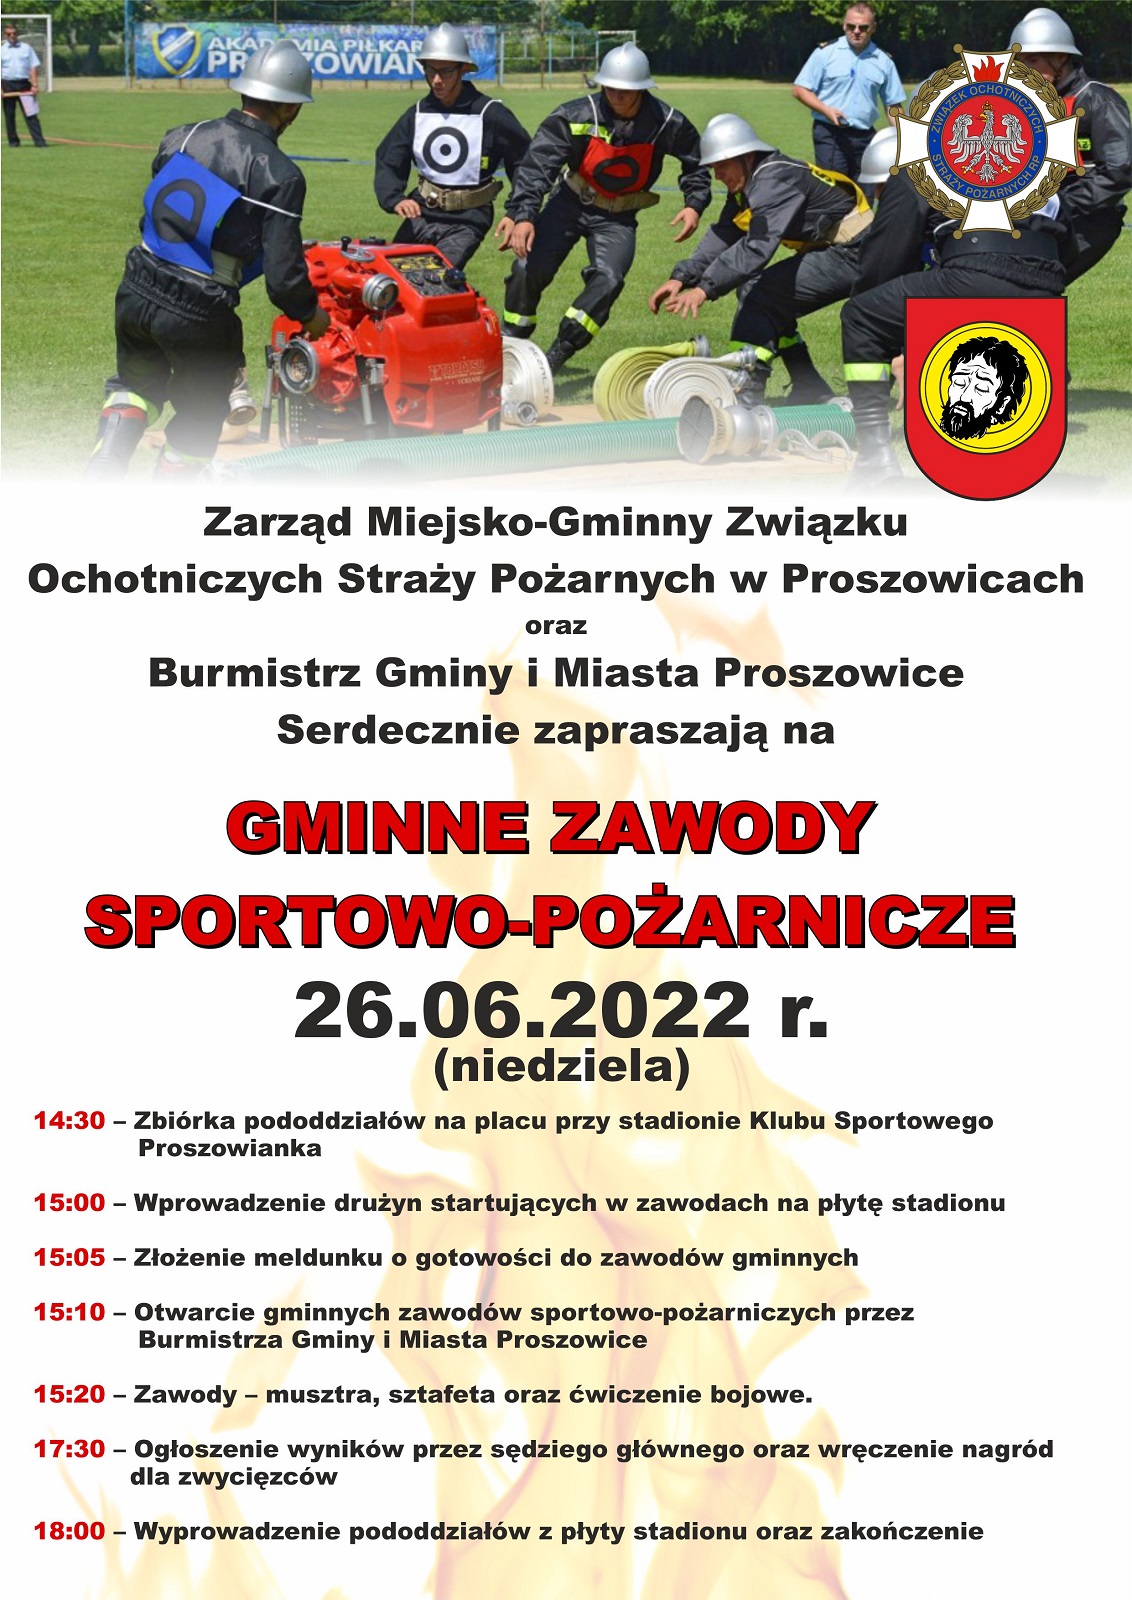 Plakat promujący Gminne Zawody Sportowo-Pożarnicze